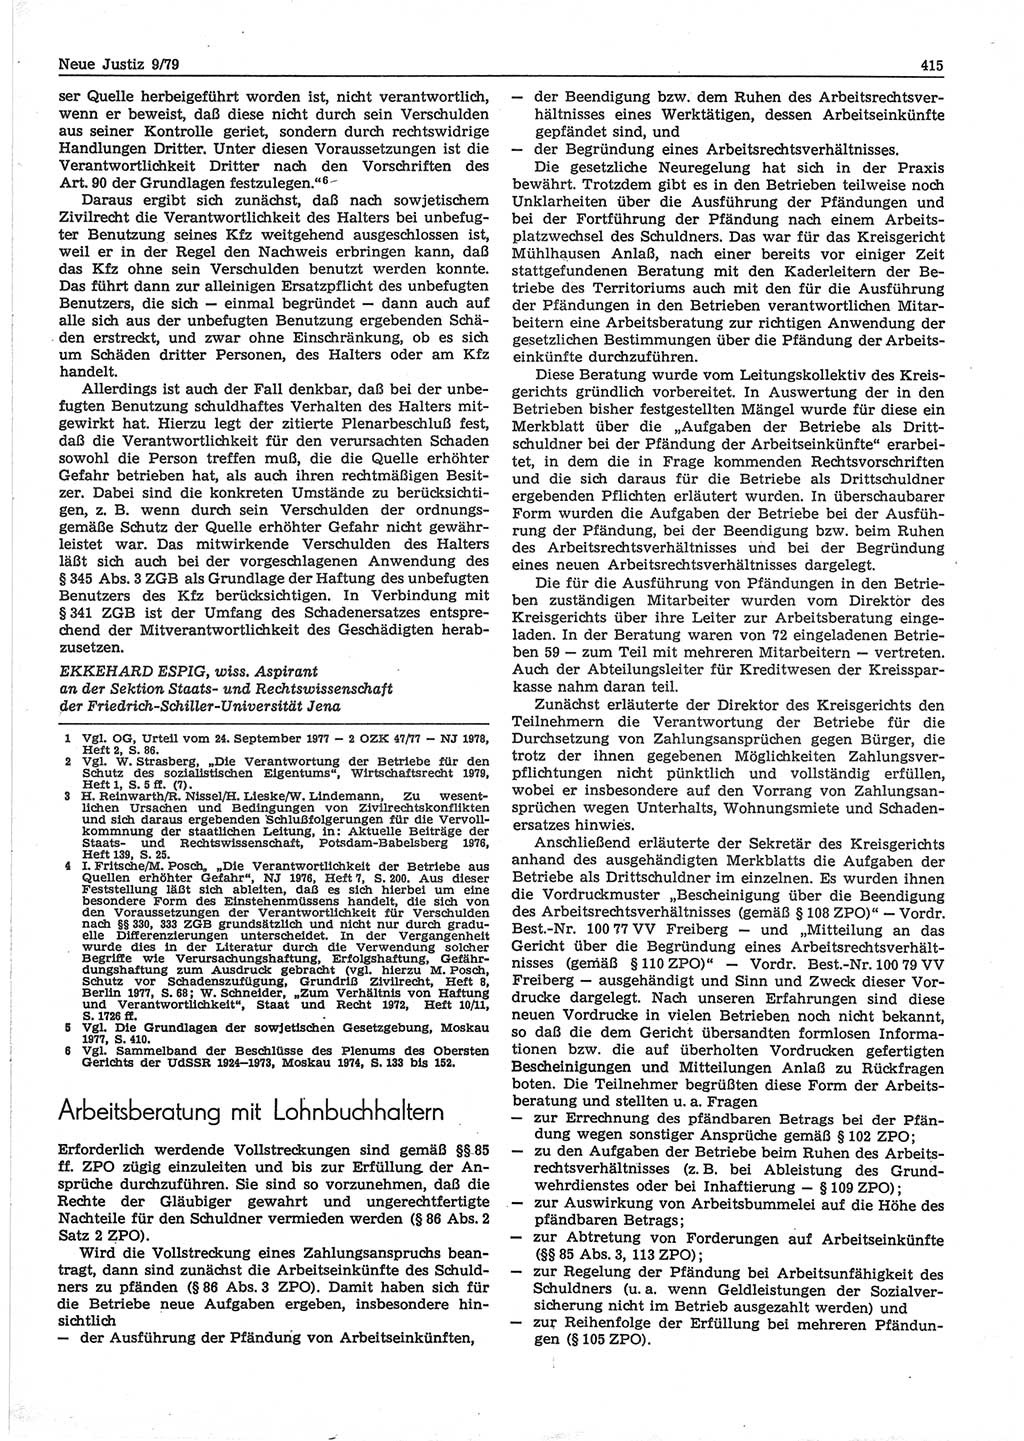 Neue Justiz (NJ), Zeitschrift für sozialistisches Recht und Gesetzlichkeit [Deutsche Demokratische Republik (DDR)], 33. Jahrgang 1979, Seite 415 (NJ DDR 1979, S. 415)